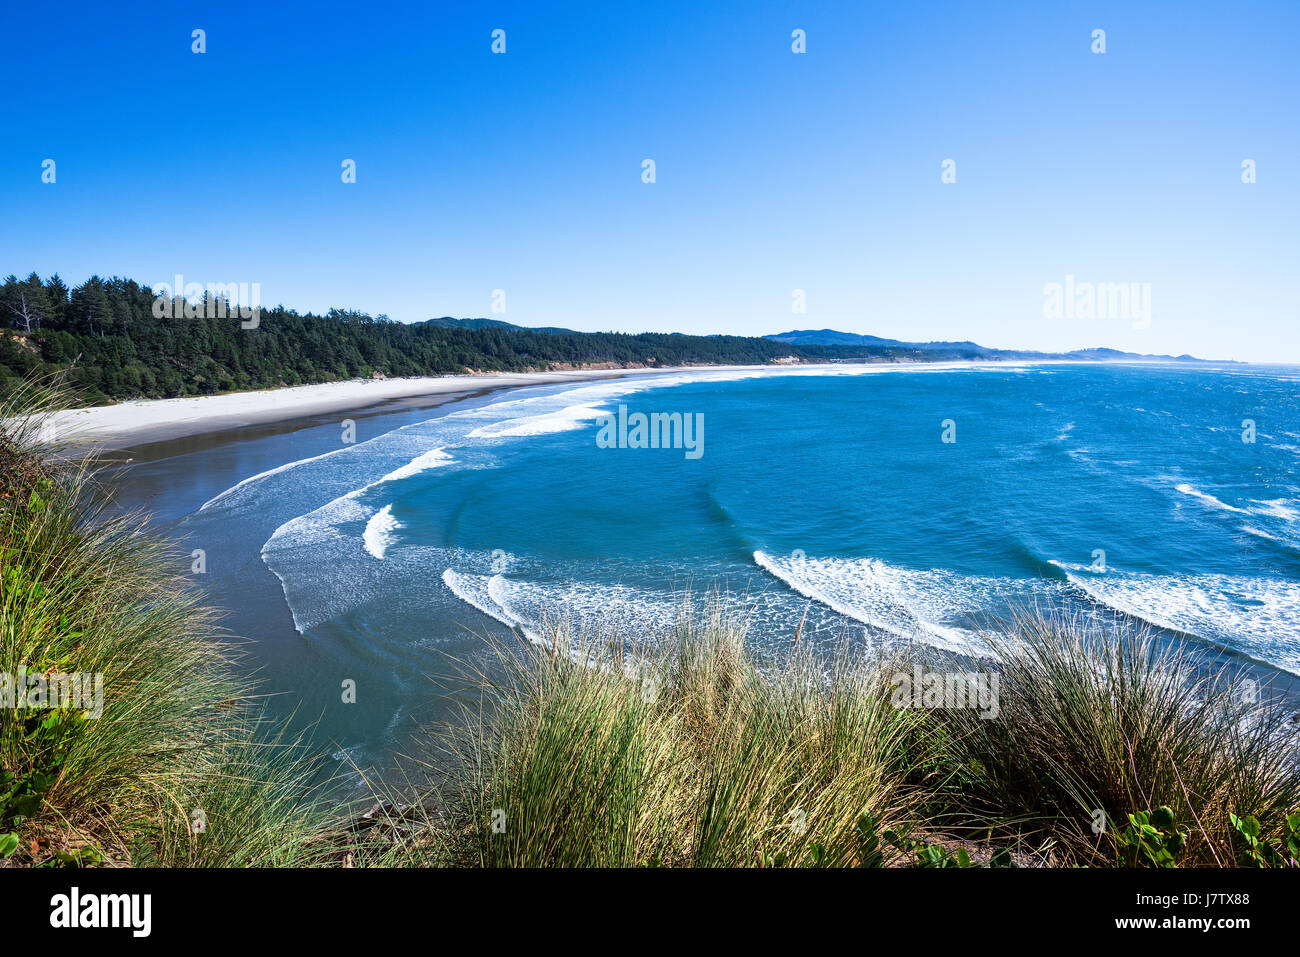 Una splendida vista dell'Oceano Pacifico sotto un vivid blue sky. Whitecaps crea un bel contrasto con il blues profondo dell'acqua e cielo. Foto Stock